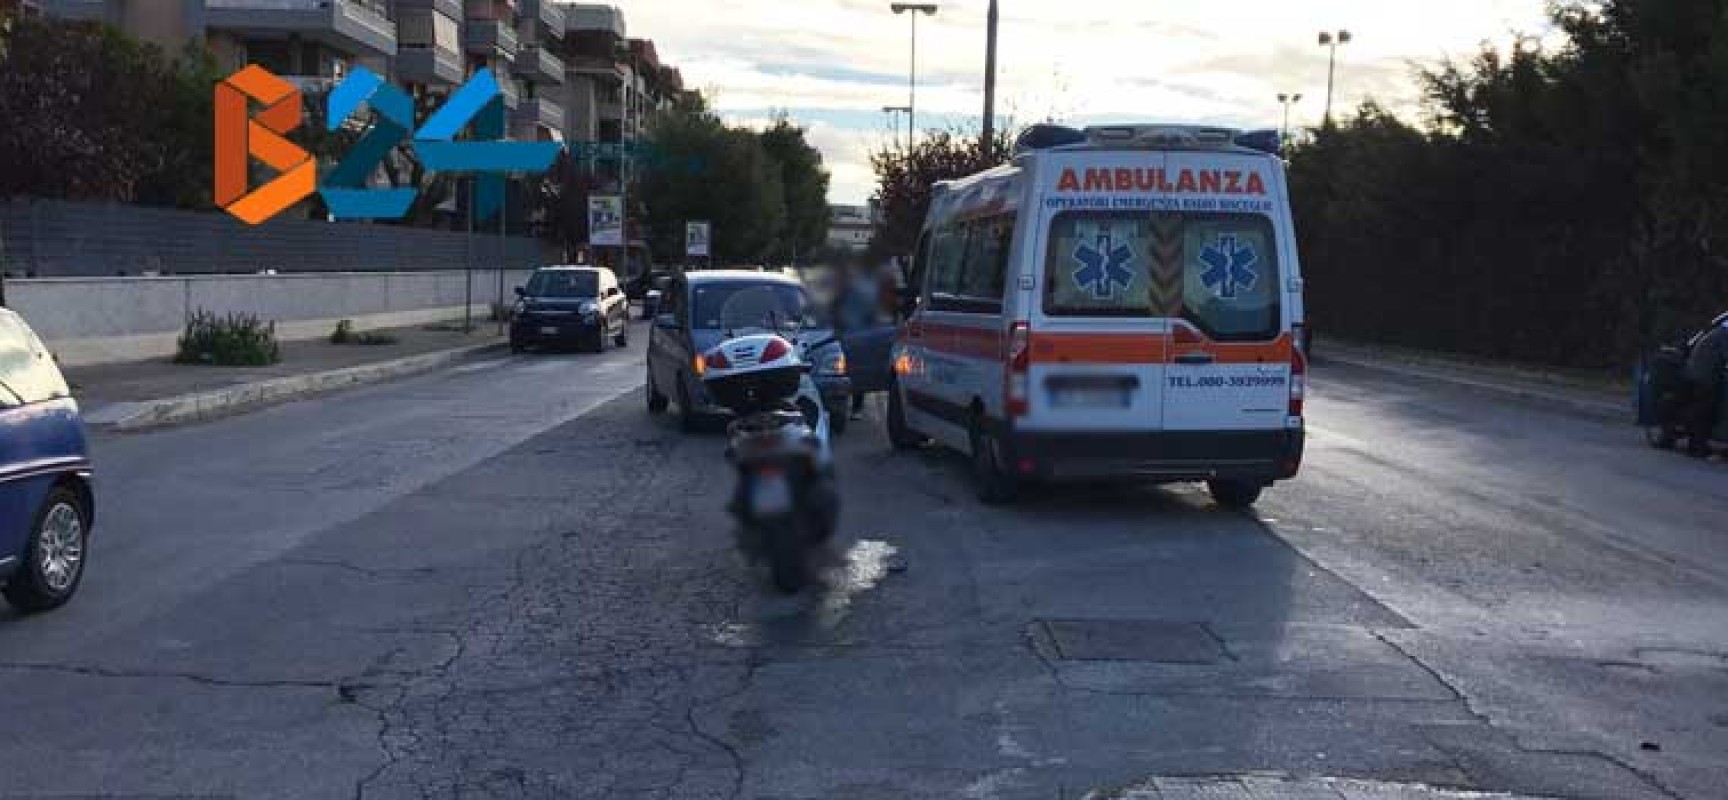 Incidente in via San Martino, motociclista al pronto soccorso / FOTO